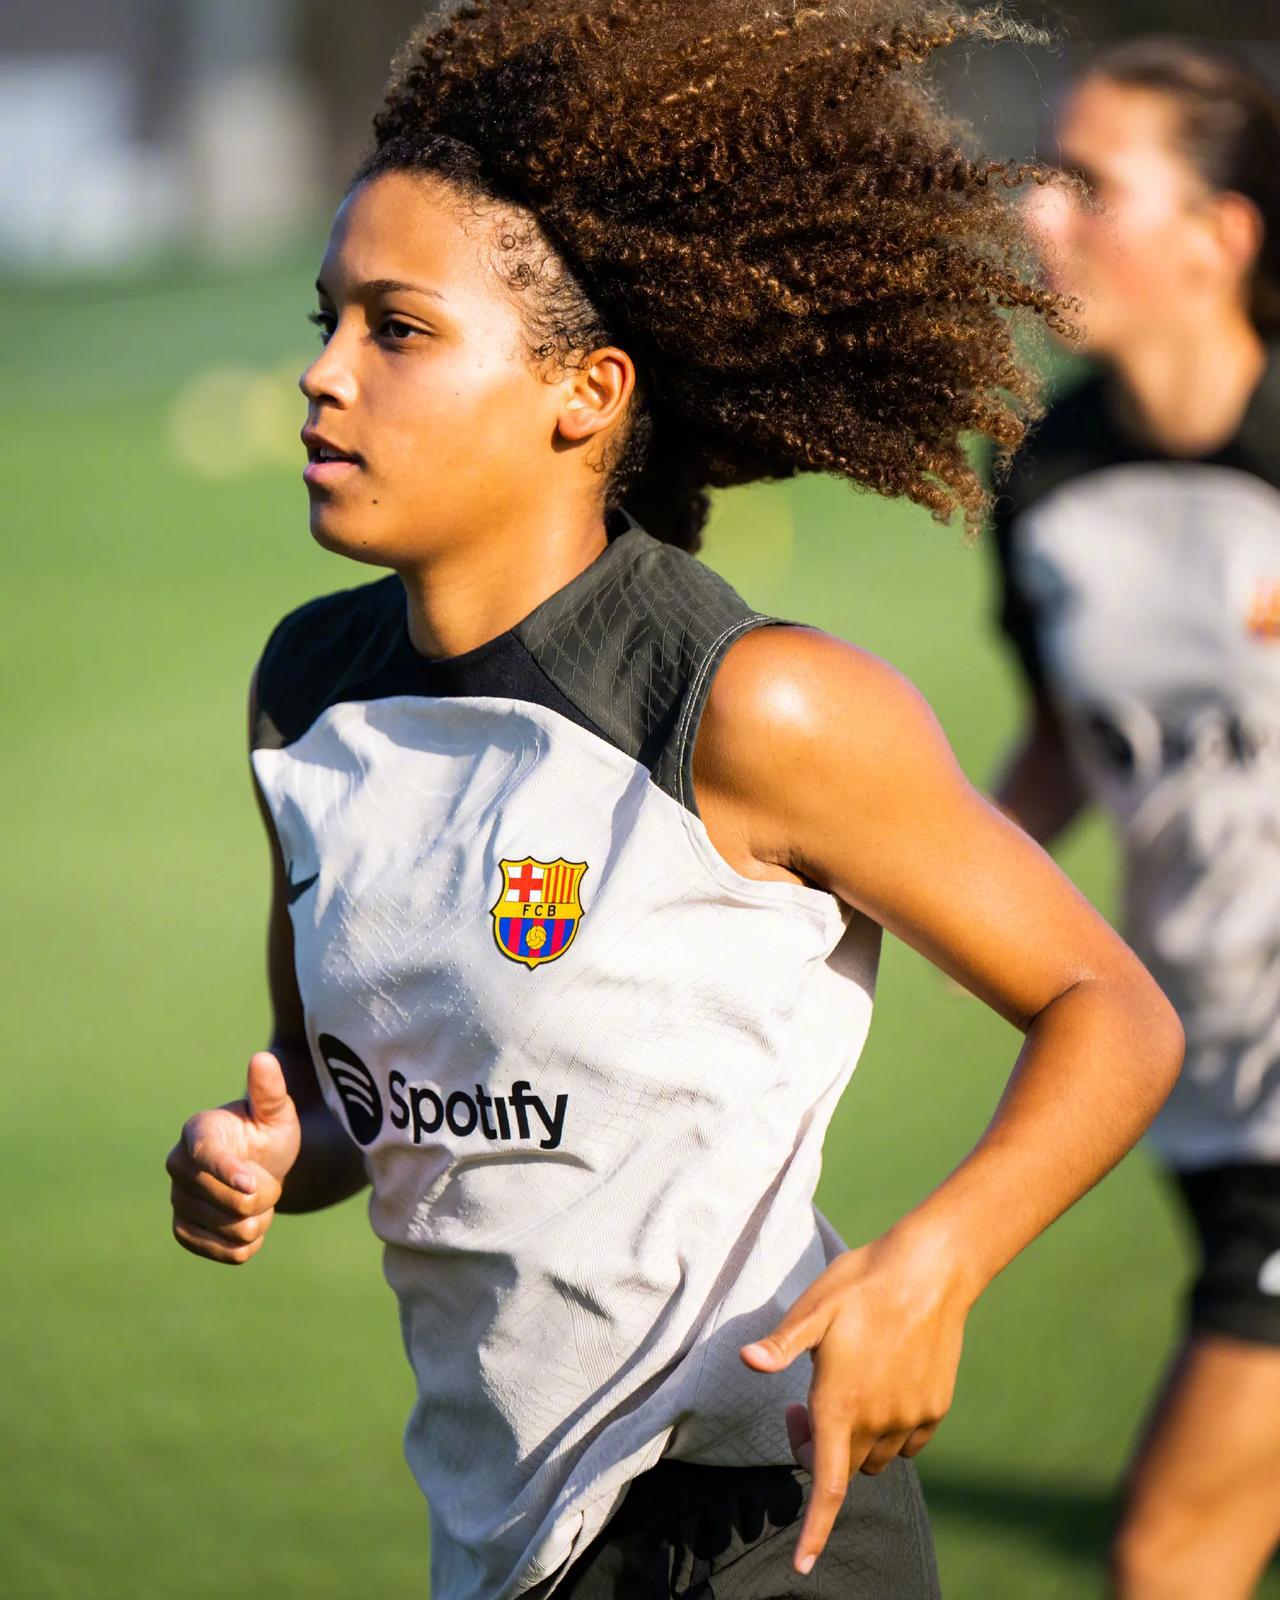 女足新赛季第一节训练✅

与男队一样，从本赛季开始球员训练时将佩戴臂环，监测运动(6)